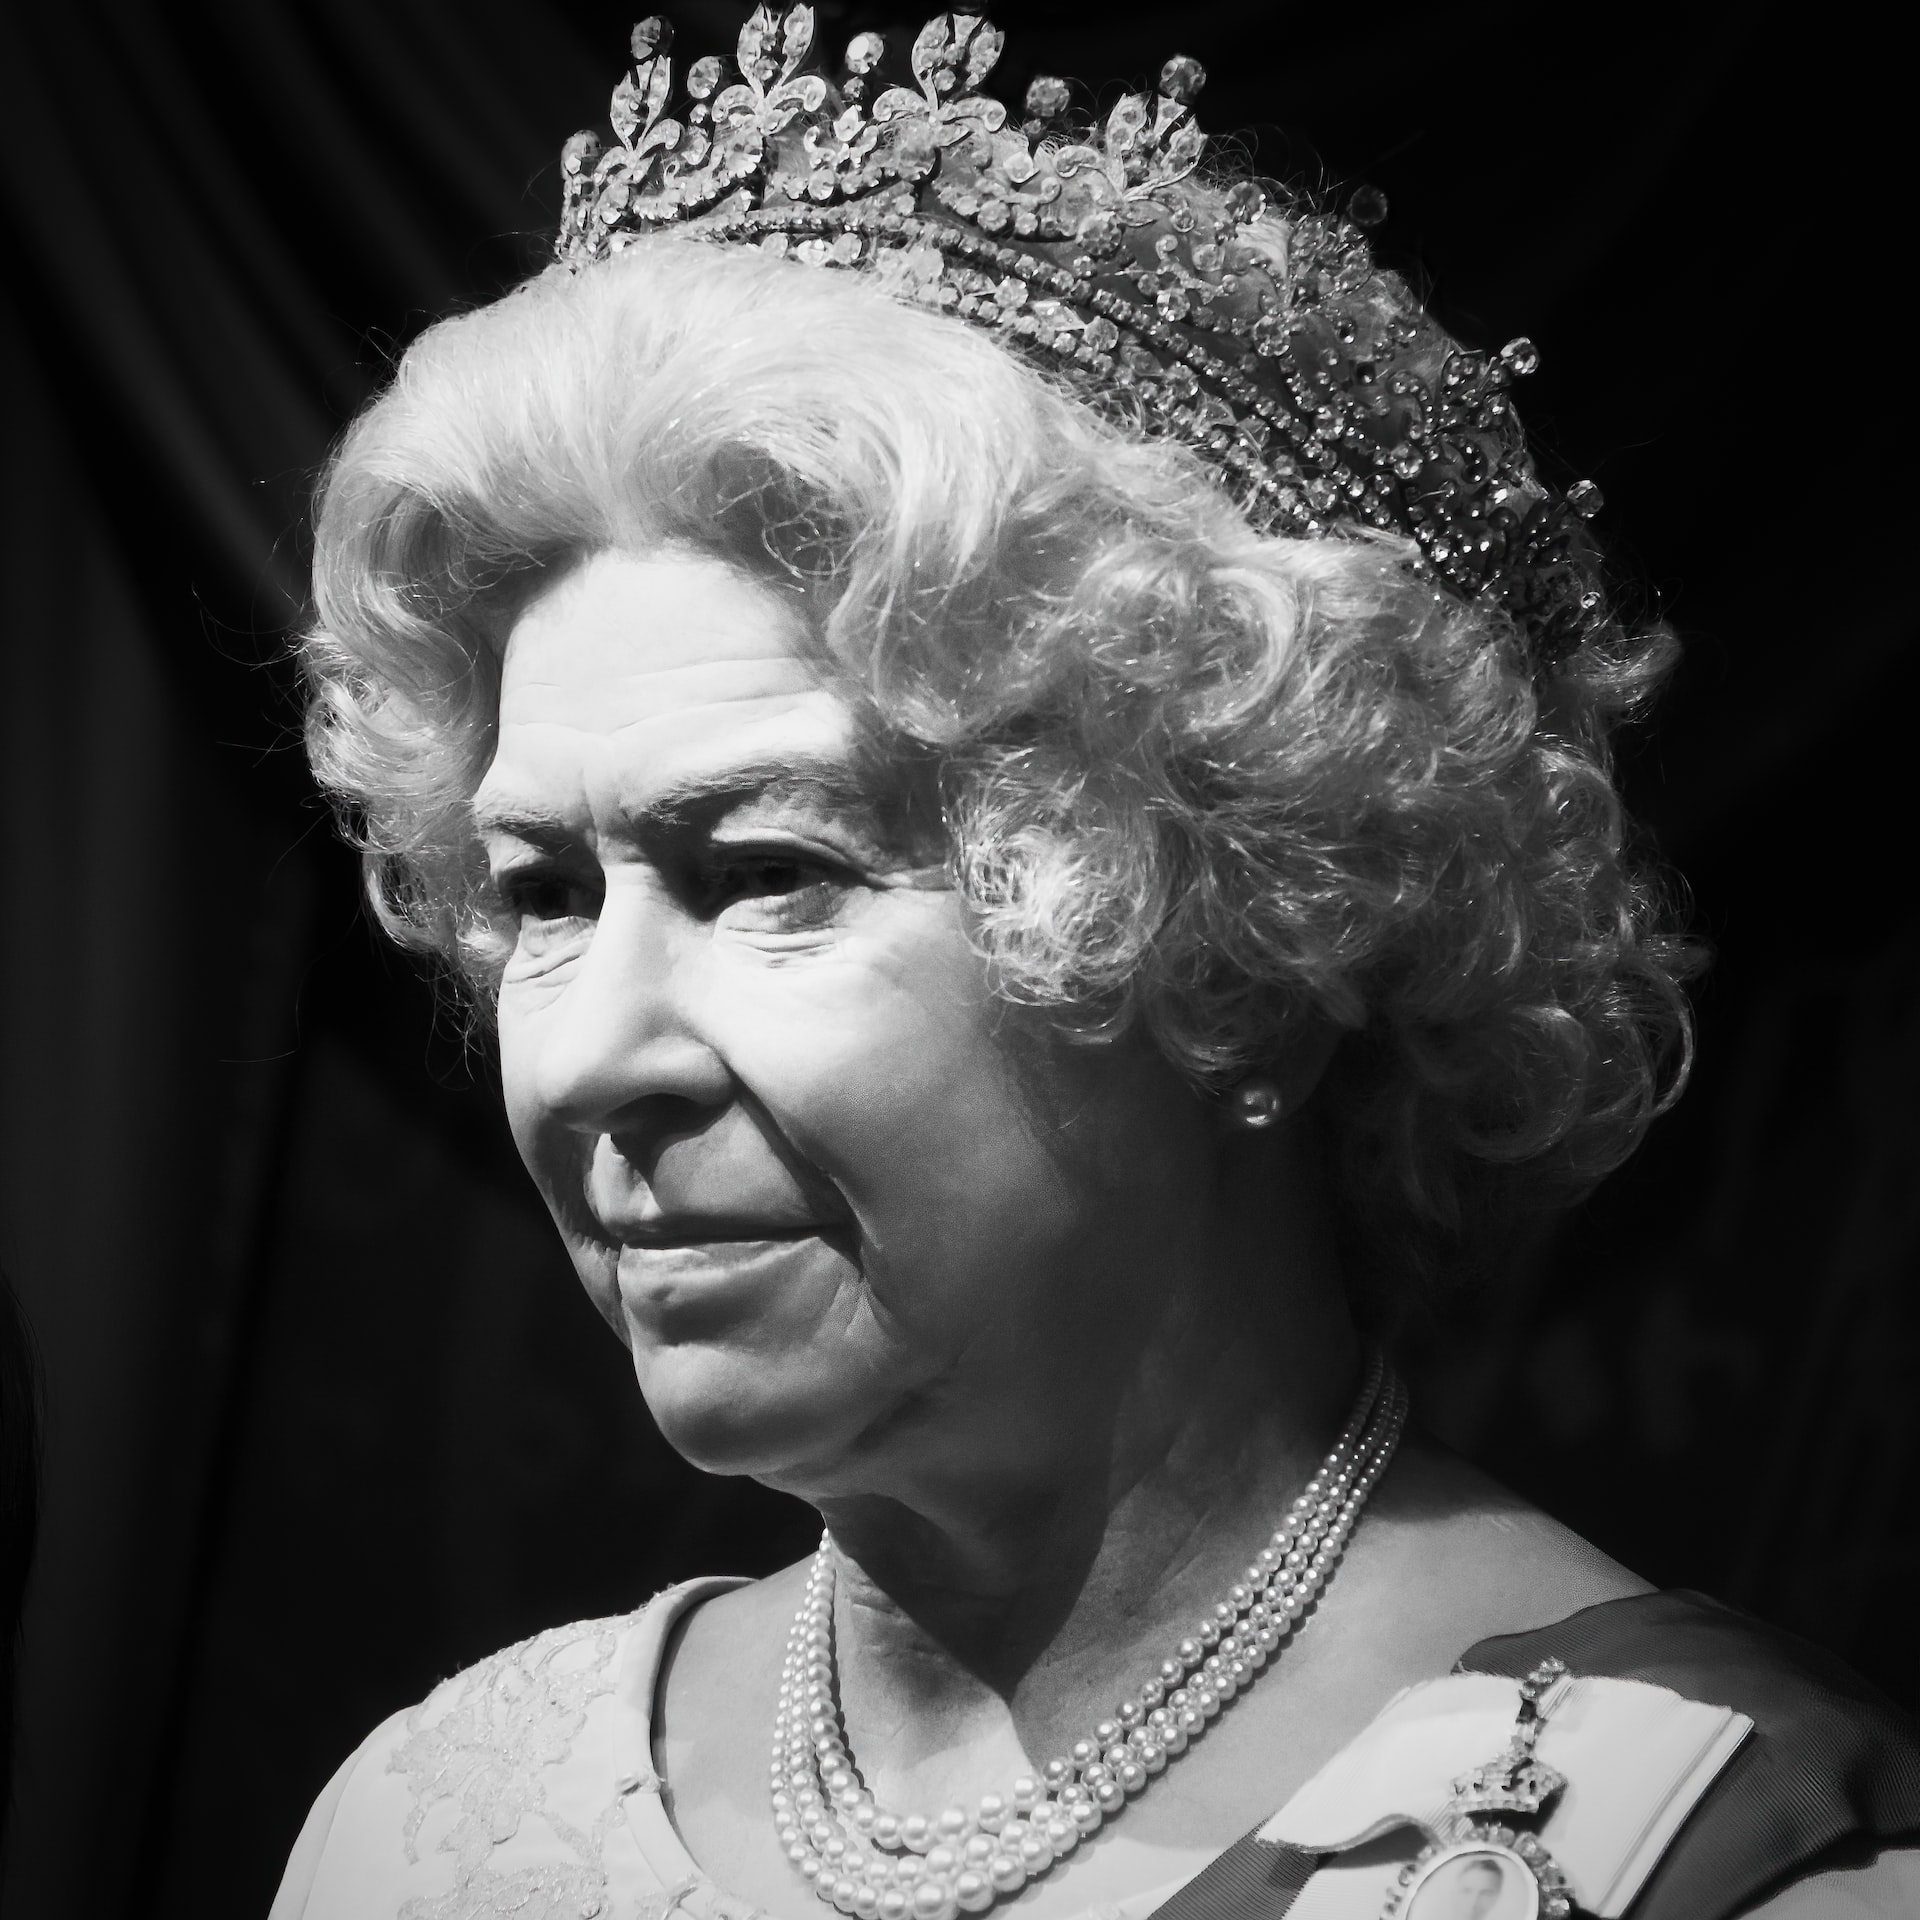 Queen Elizabeth's wax figure